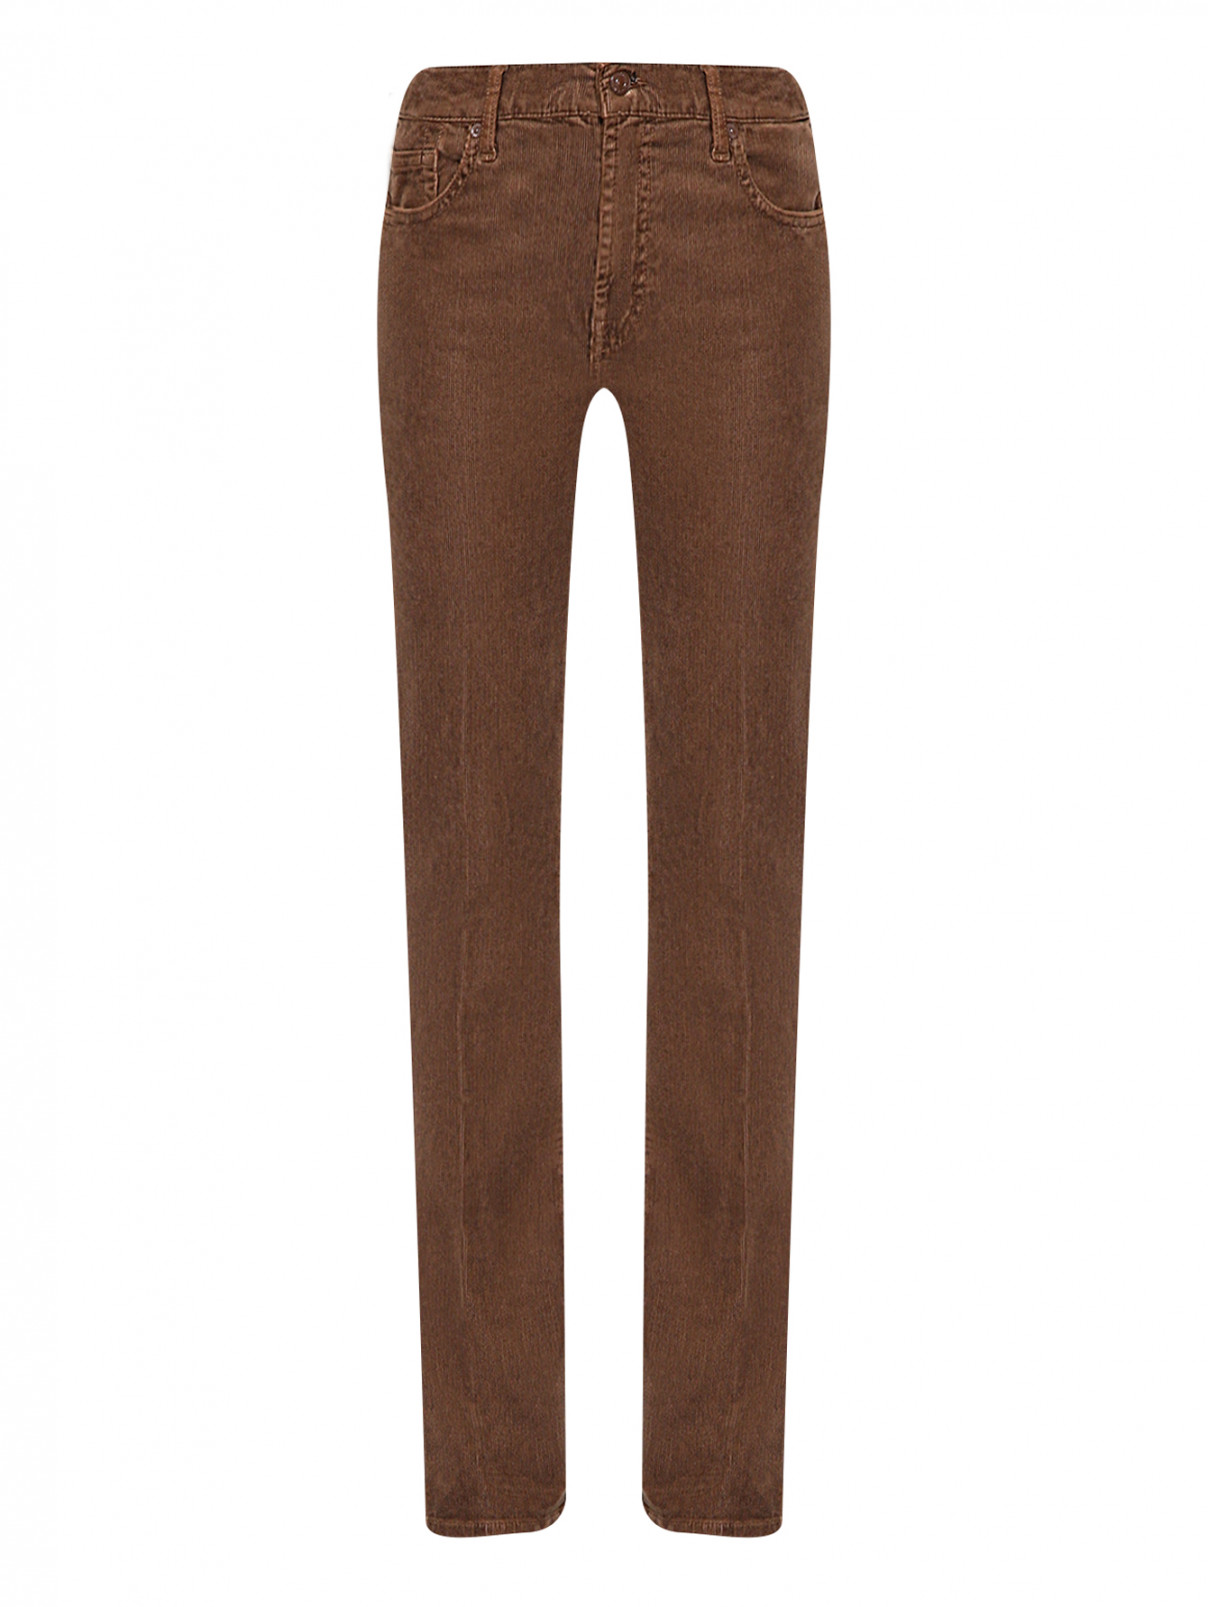 Вельветовые брюки с карманами 7 For All Mankind  –  Общий вид  – Цвет:  Коричневый